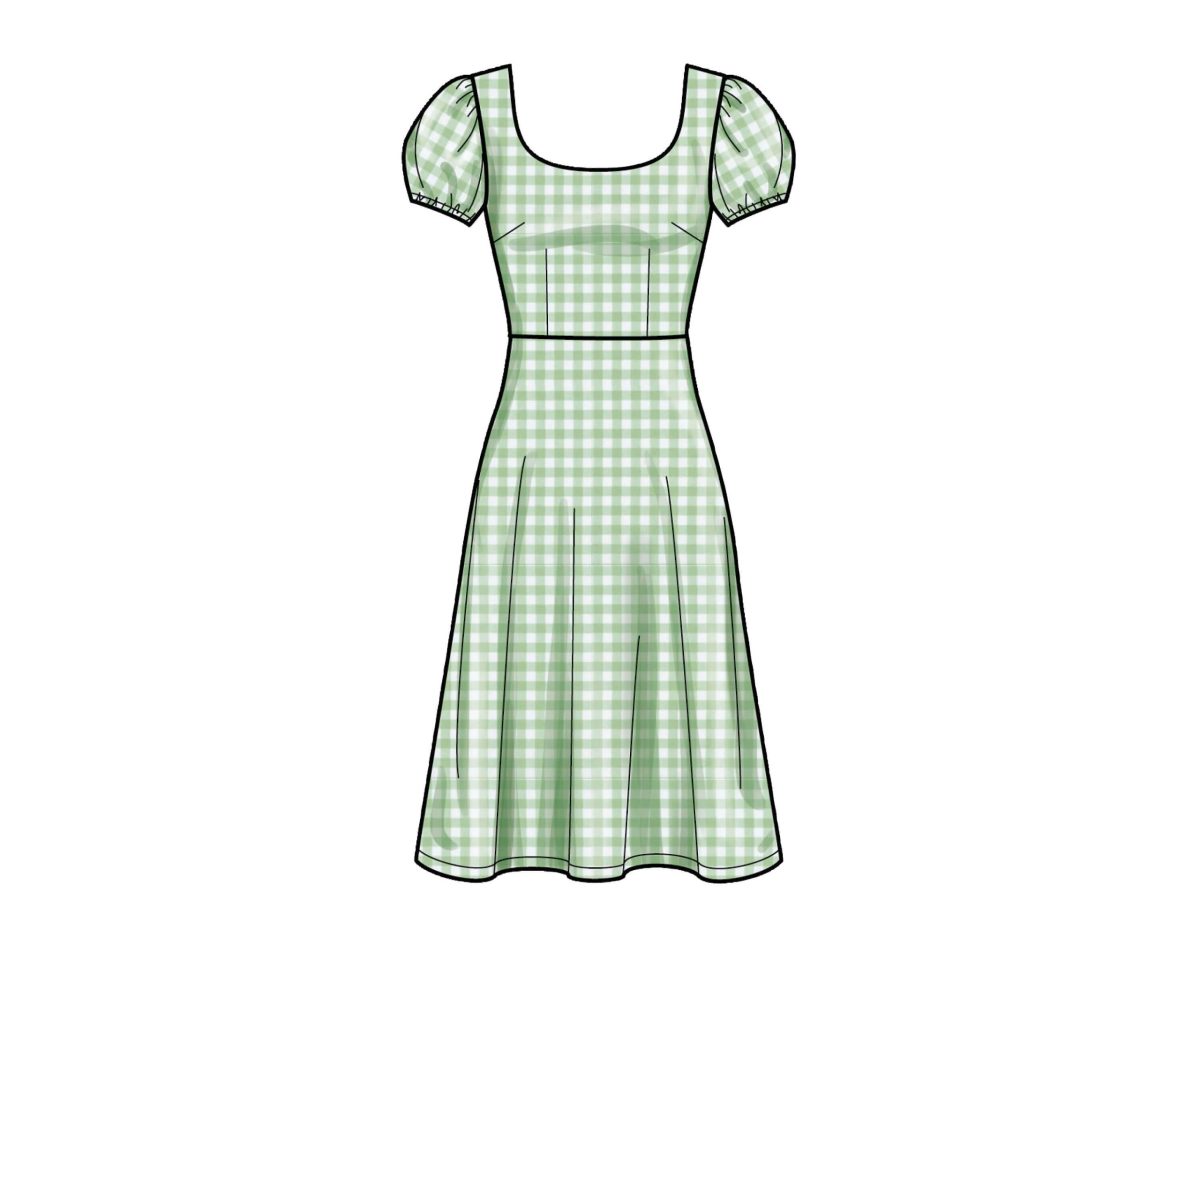 New Look Sewing Pattern N6693 Misses' Dresses